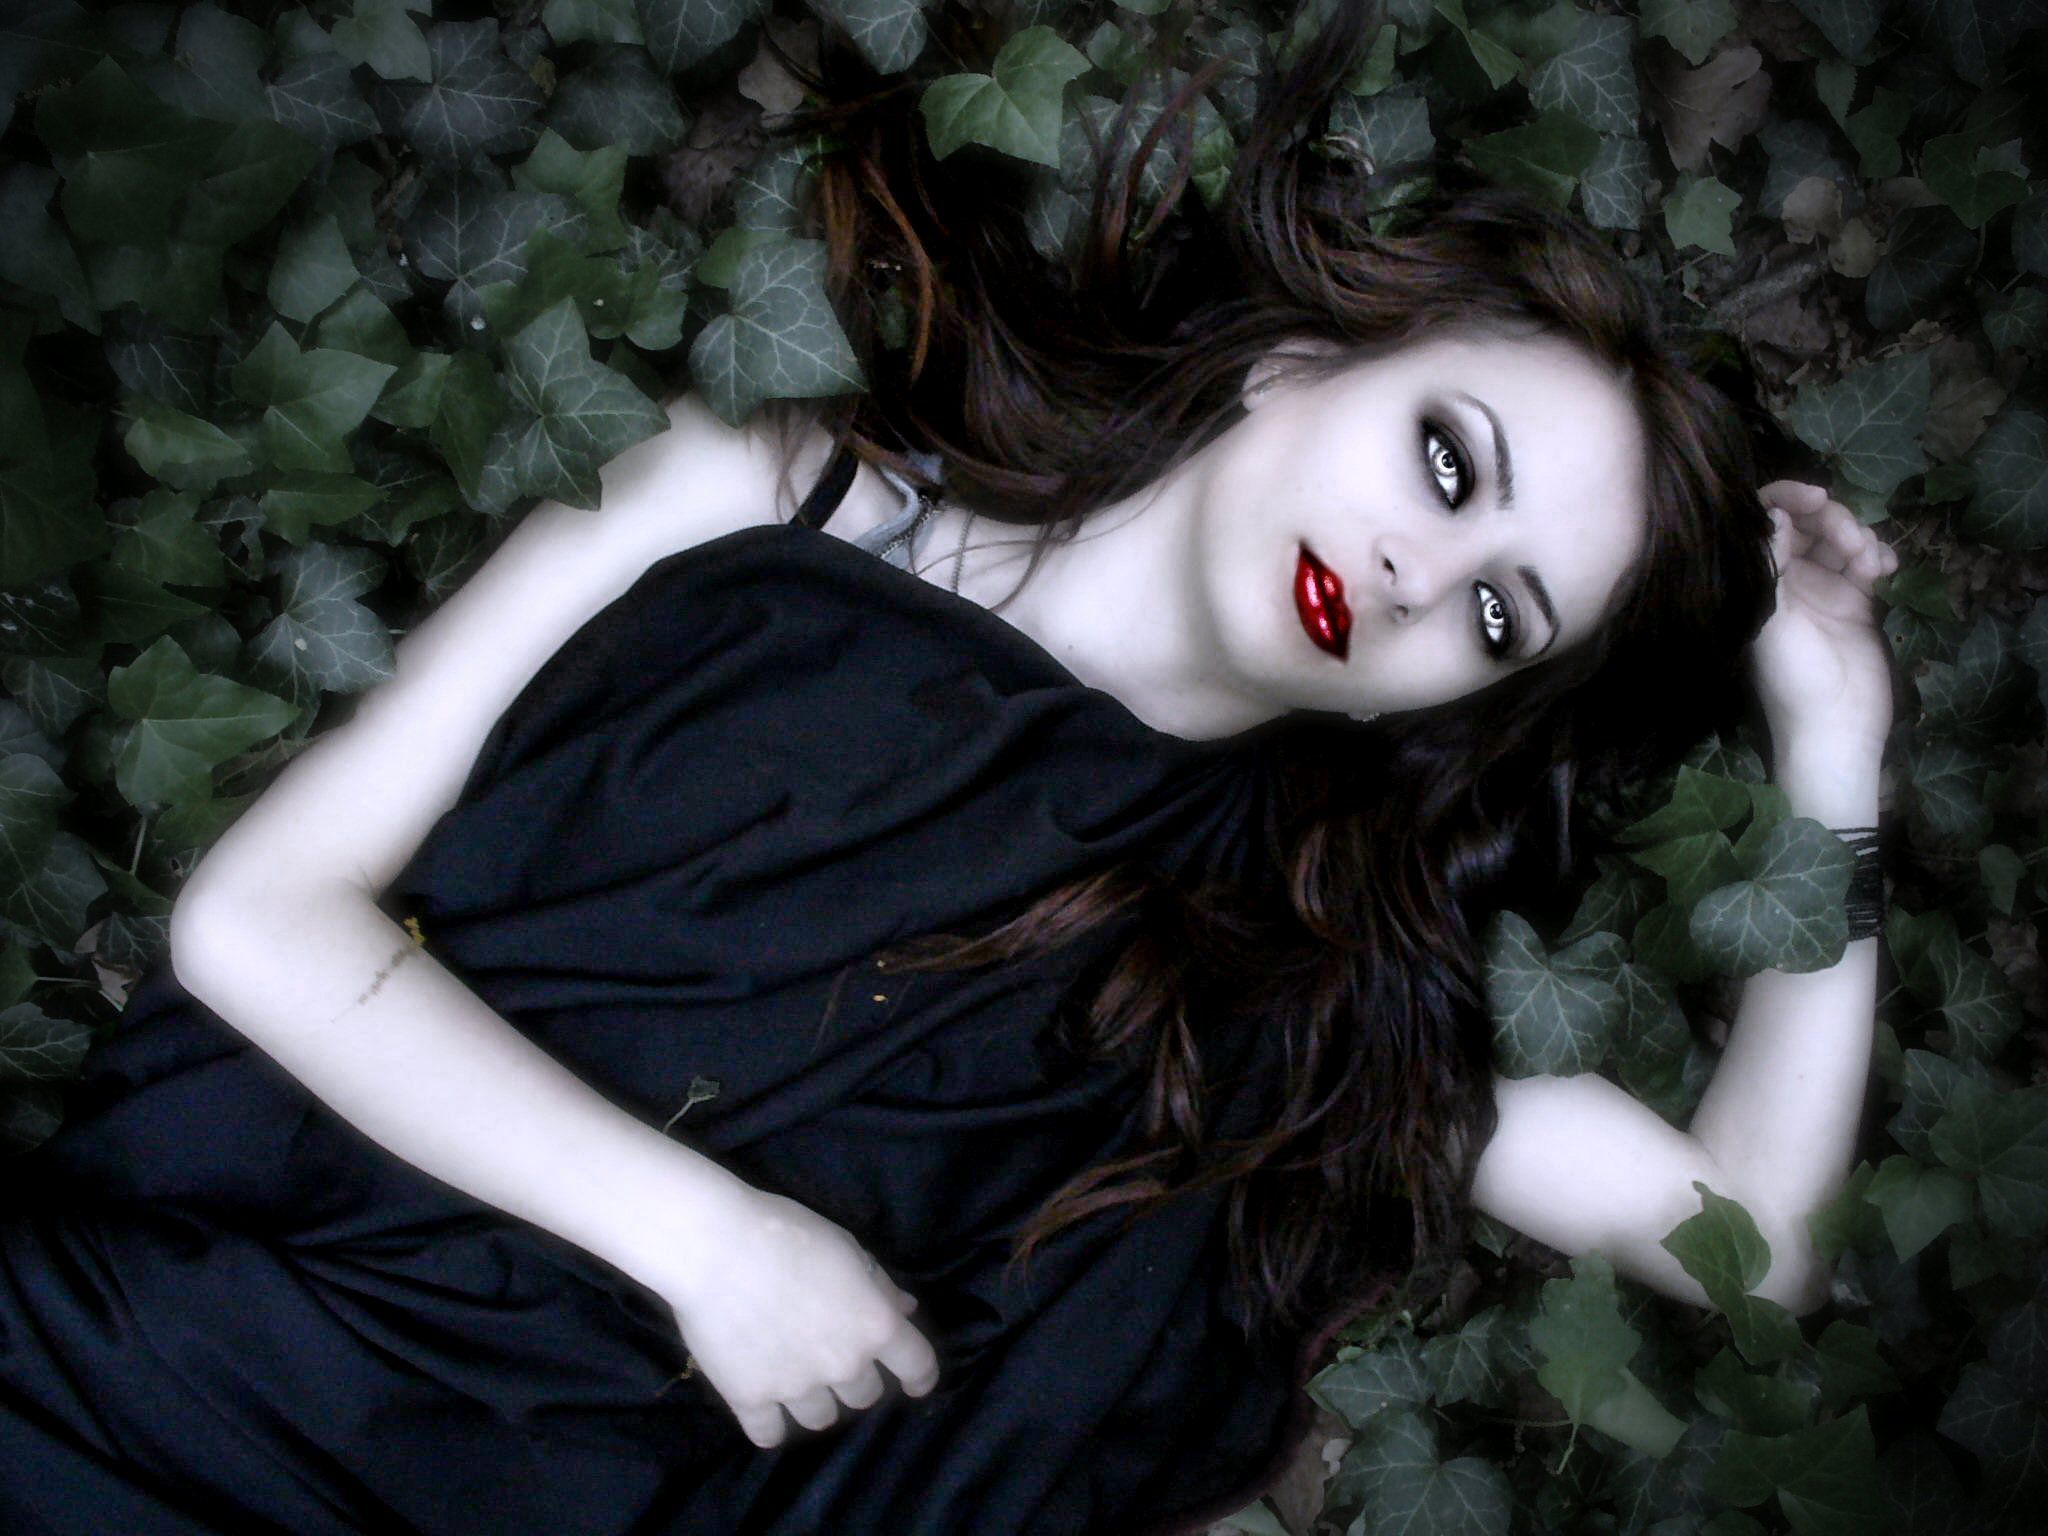 Vampire girl lying on leaves HD Wallpaper. Background Image